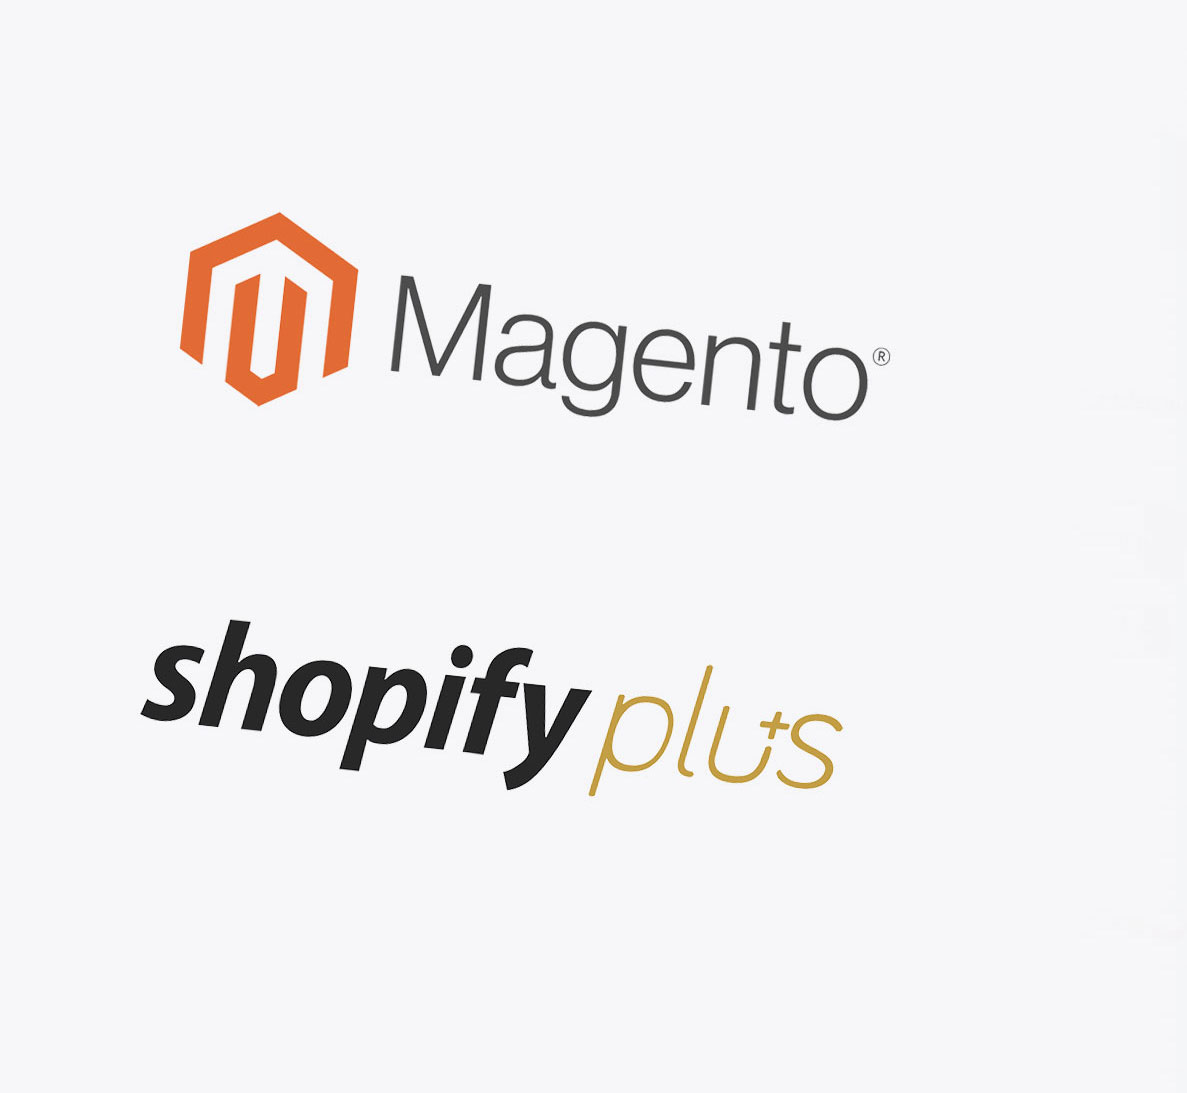 Magento & shopify plus logos